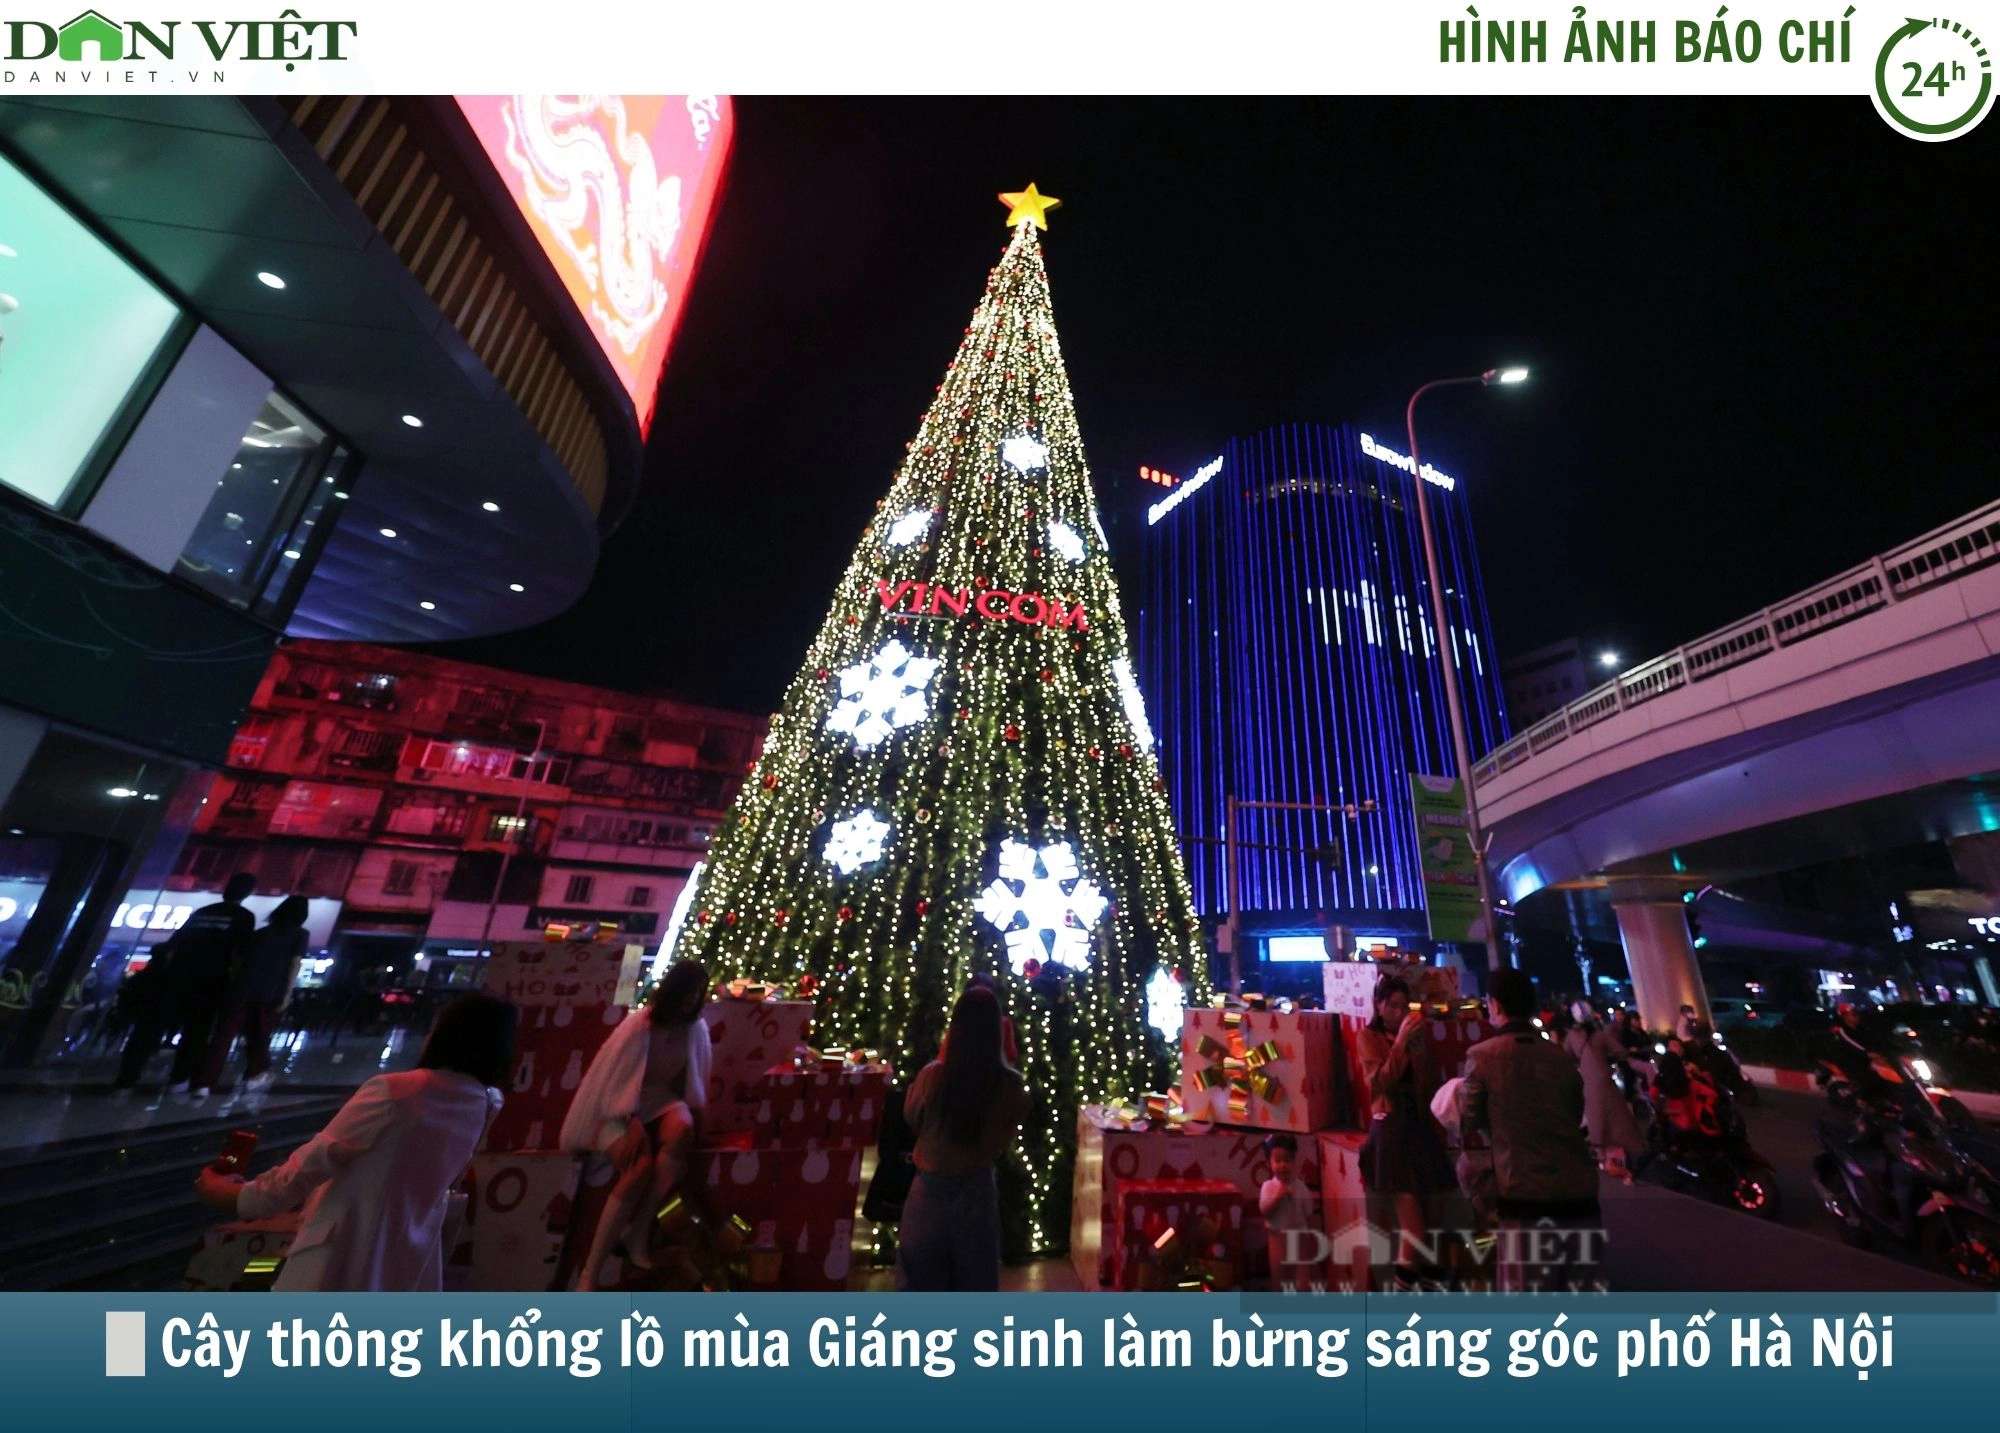 Hình ảnh báo chí 24h: Hàng loạt cây thông khổng lồ mùa Giáng sinh làm bừng sáng góc phố Hà Nội - Ảnh 1.